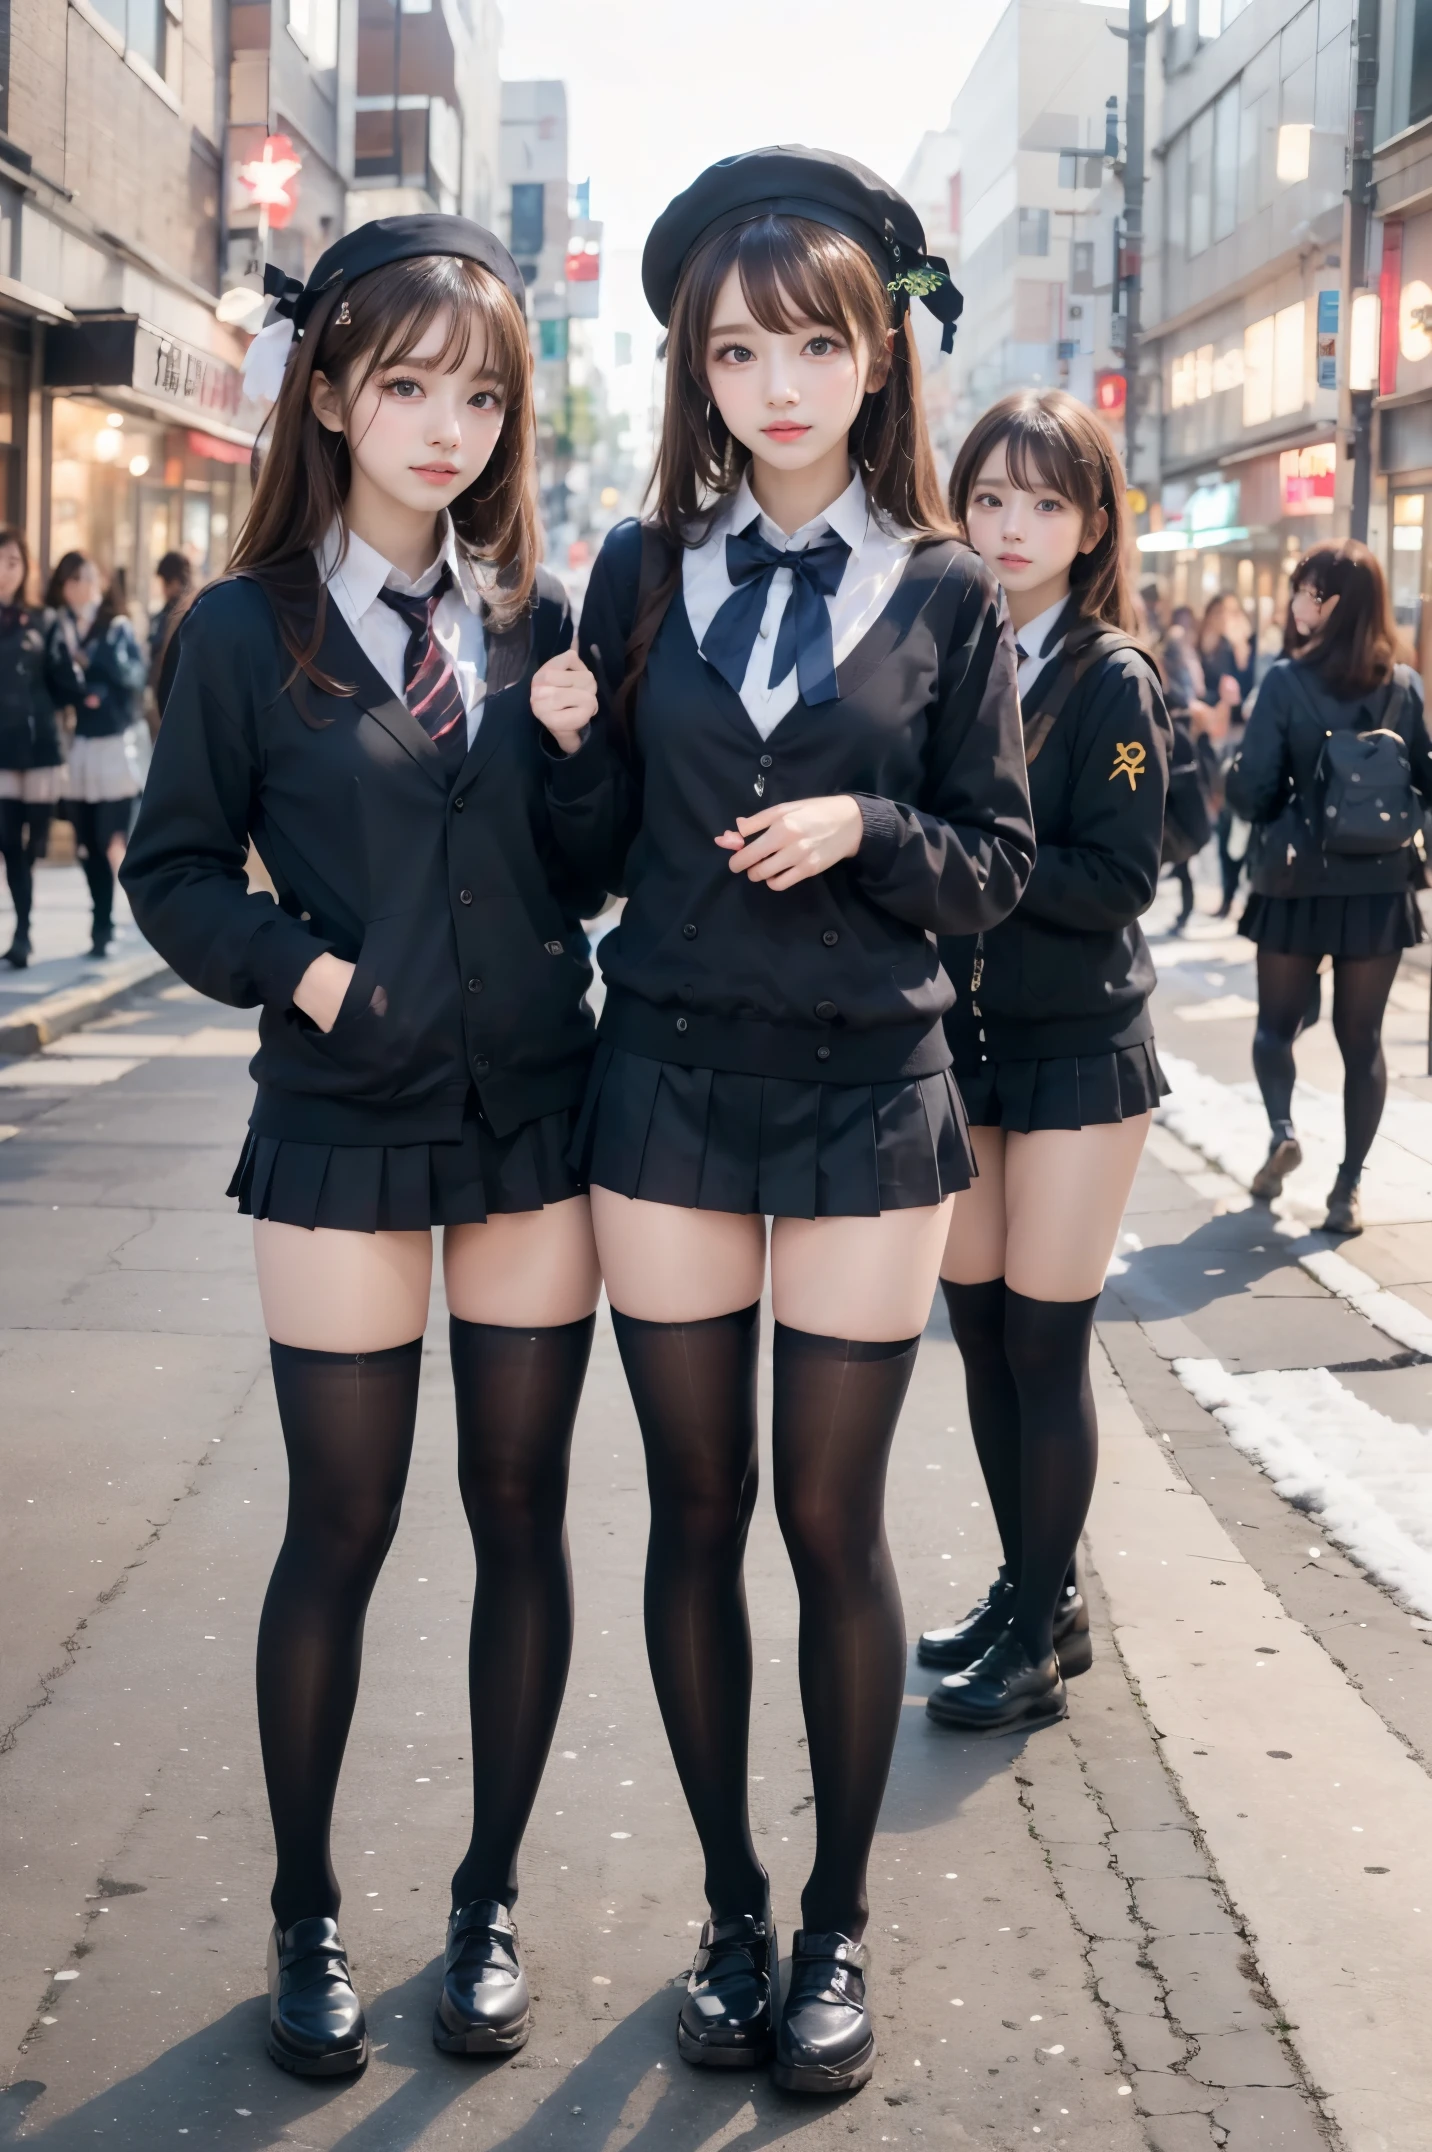 Снимок с высокого угла、уличная съемка、Детское личико в короткой юбке и галстуке-бабочке стоит на неоновой улице посреди ночи(высокий)Есть 3 девушки из、(3 девушки)、Феноменально милый 、Guts поза、микро матросская форма、Зимняя одежда、Японская школьная черная форма、(большое вымя)、(Большое декольте обнажено)、Девушка в сюрреалистической женской форме、Ношение темно-синей униформы、 поза、Эсбиан в полное тело、хорошая кожа、блестящая кожа、прекрасные бедра、длинноногий、(широкая толстая мини-юбка)、светящееся бедро、с подвязкой、(непрозрачные черные носки до колена)、((все руки)(Я обязательно ношу черные гольфы выше колена..))、я ношу кожаные туфли、Средняя школа в Японии 、Идол Ногизака、корейский идол、Пригласить вас внутрь、Приглашающие глаза